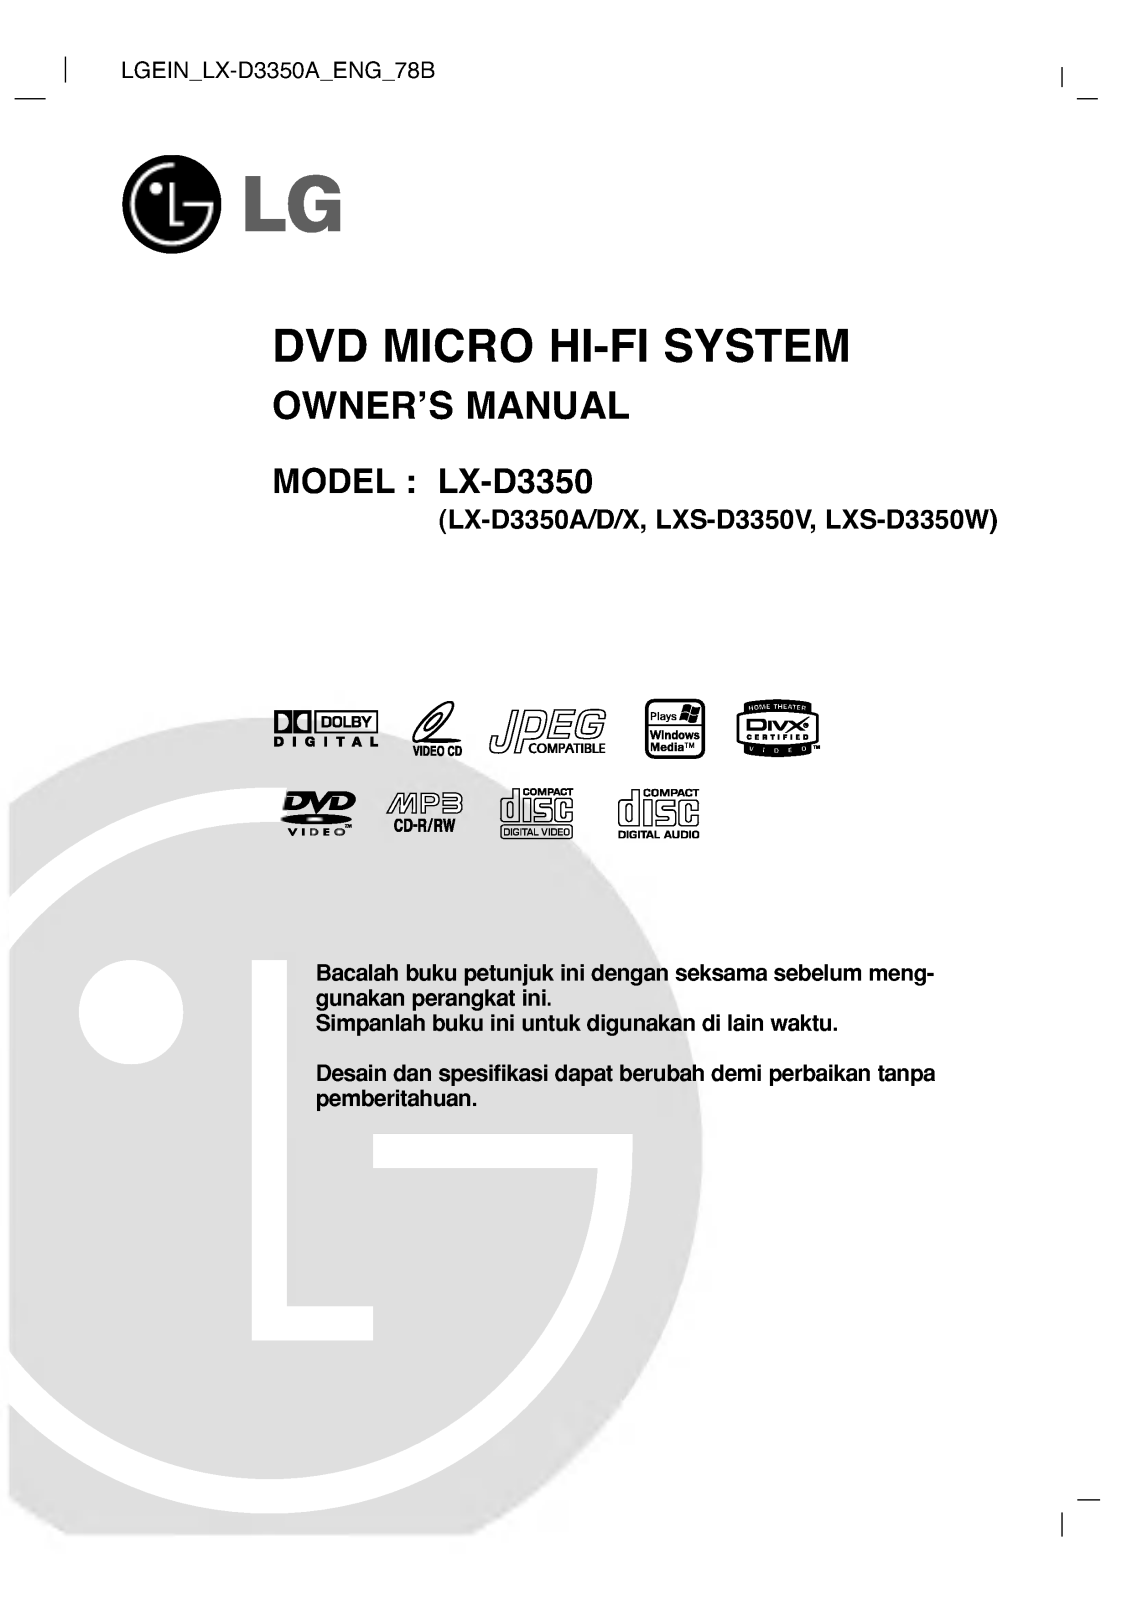 LG LX-D3350A Manual book